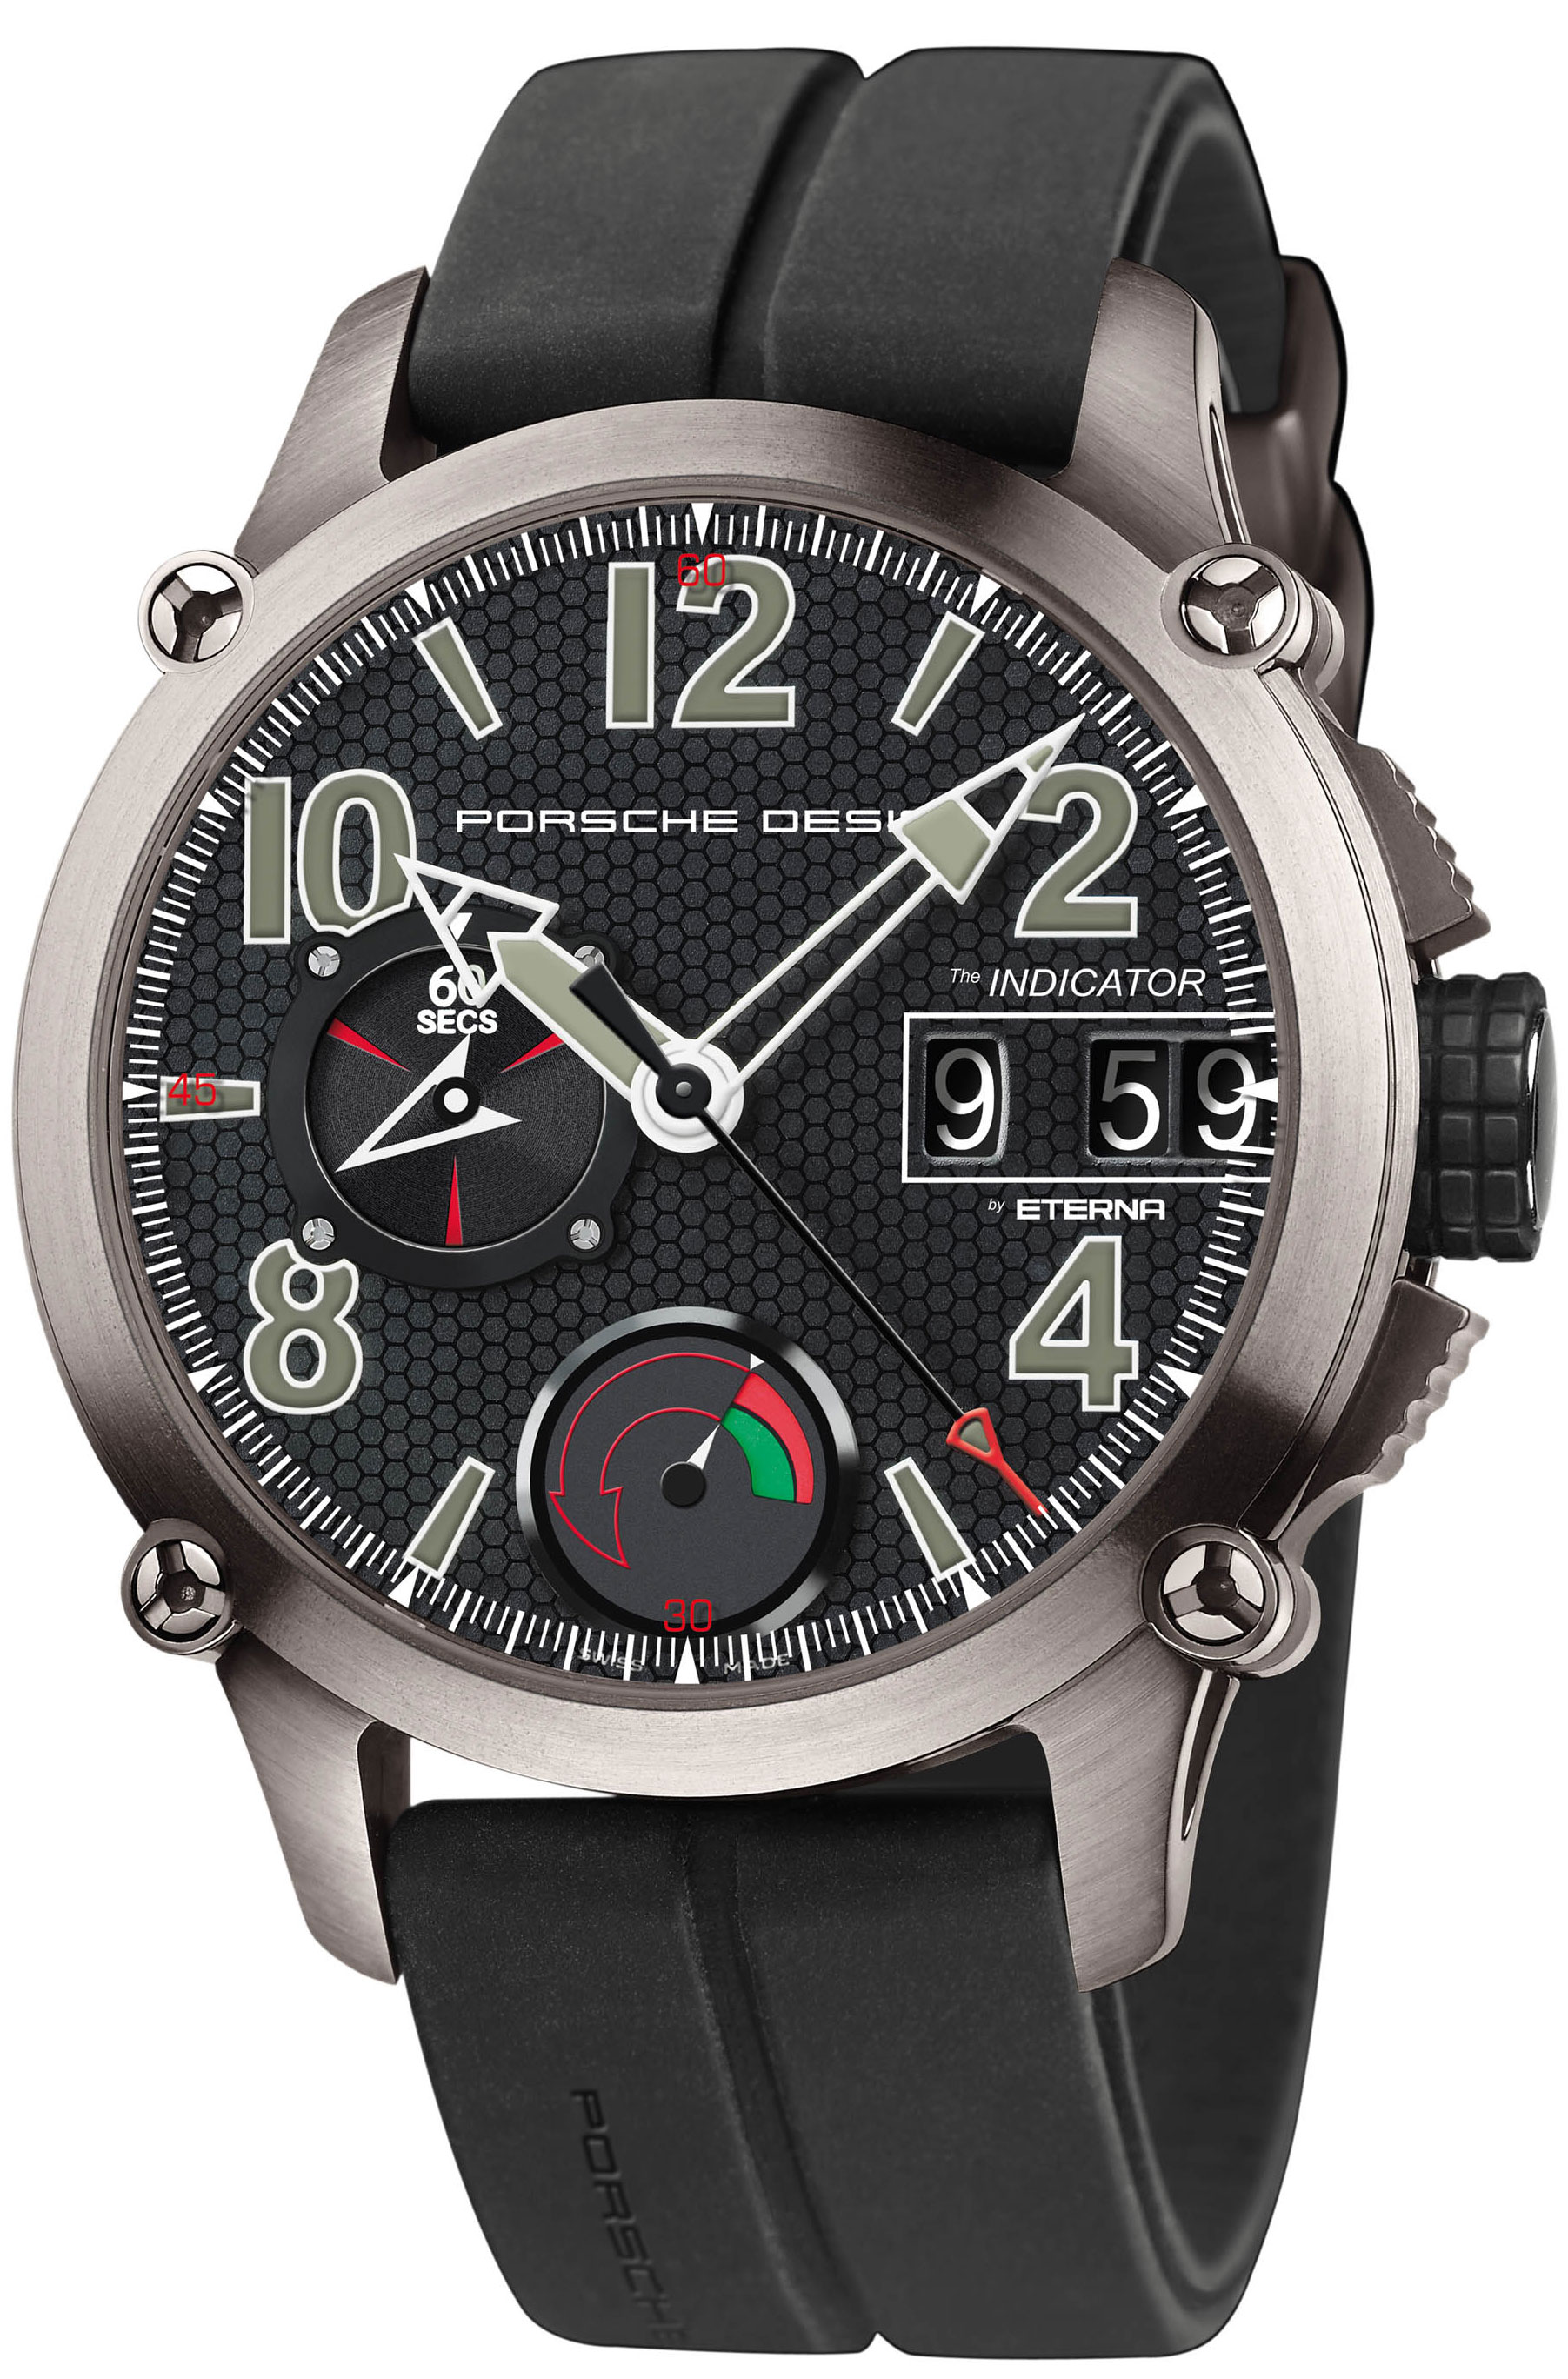 buy Porsche Design Indicator Men's Watch 6910.10.40.1149